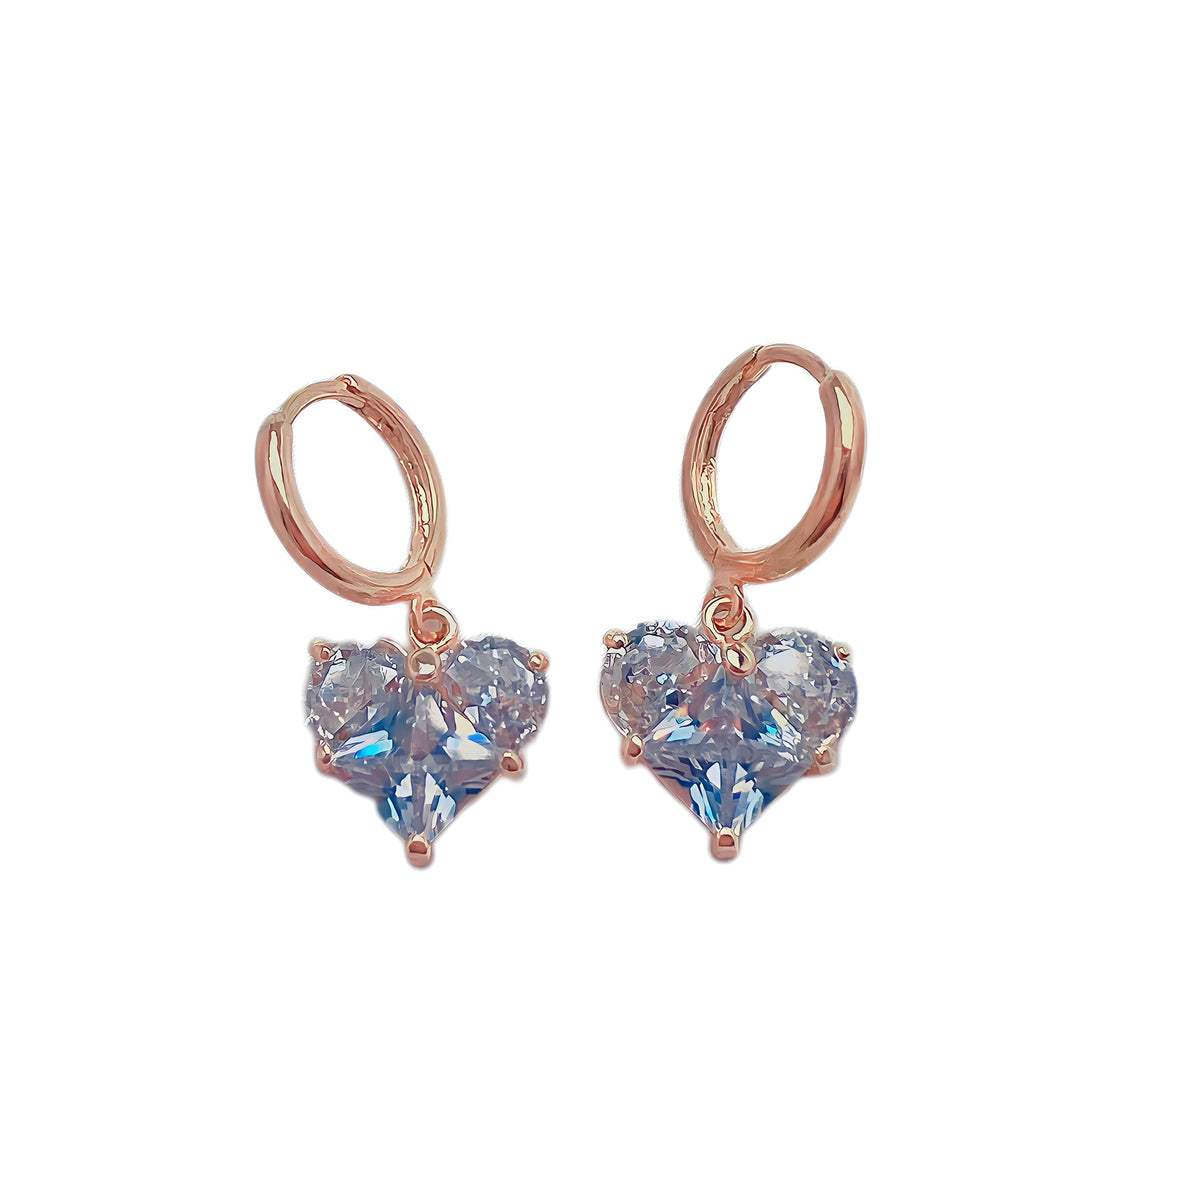 Heartz of Glass Earrings